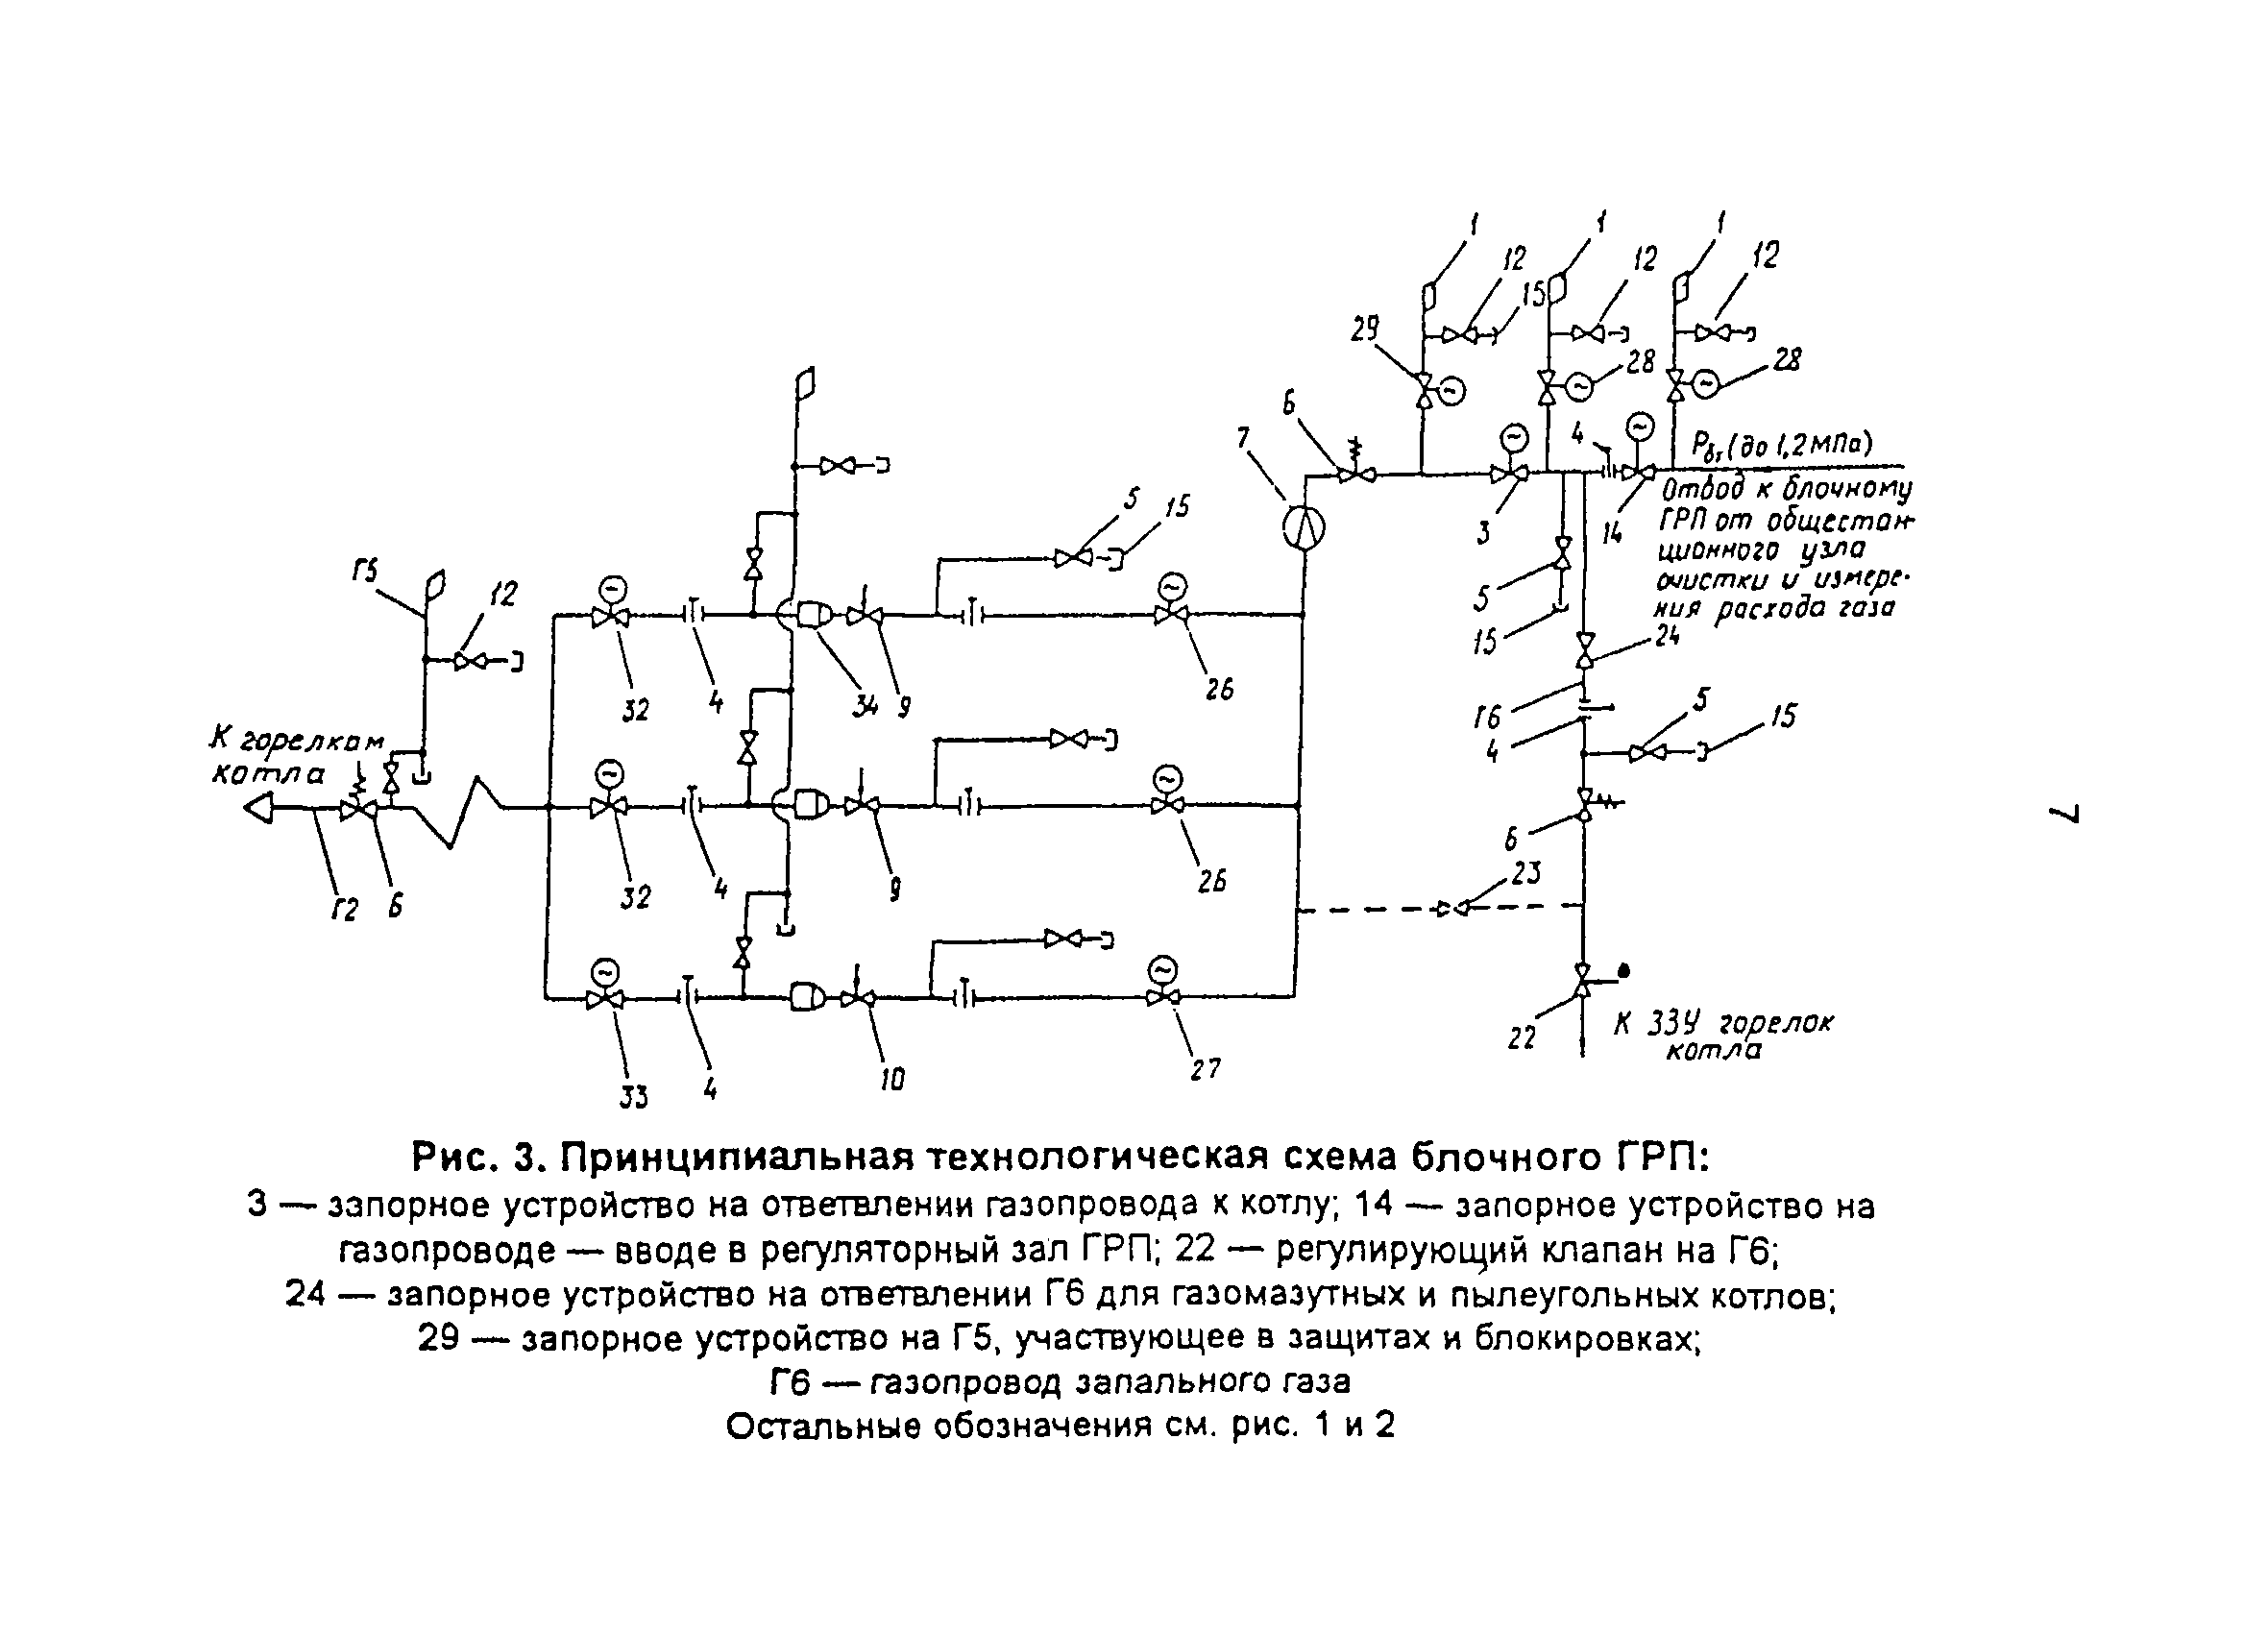 Циркуляр Ц-03-97(т)